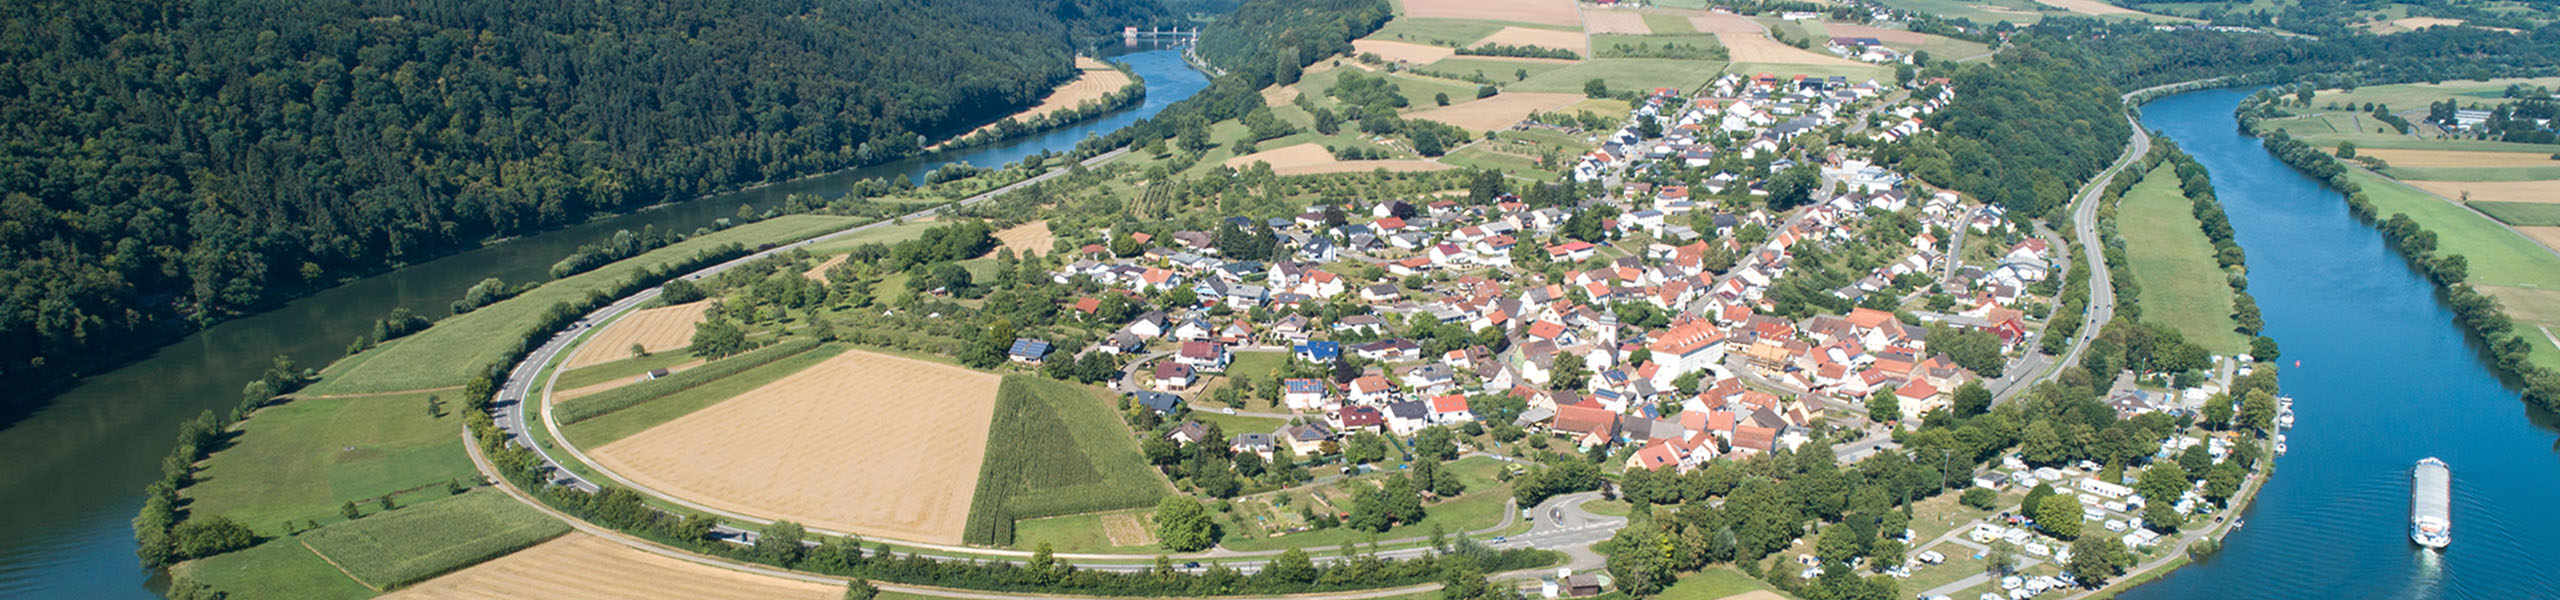 50 Jahre Neckar-Odenwald-Kreis - 2010